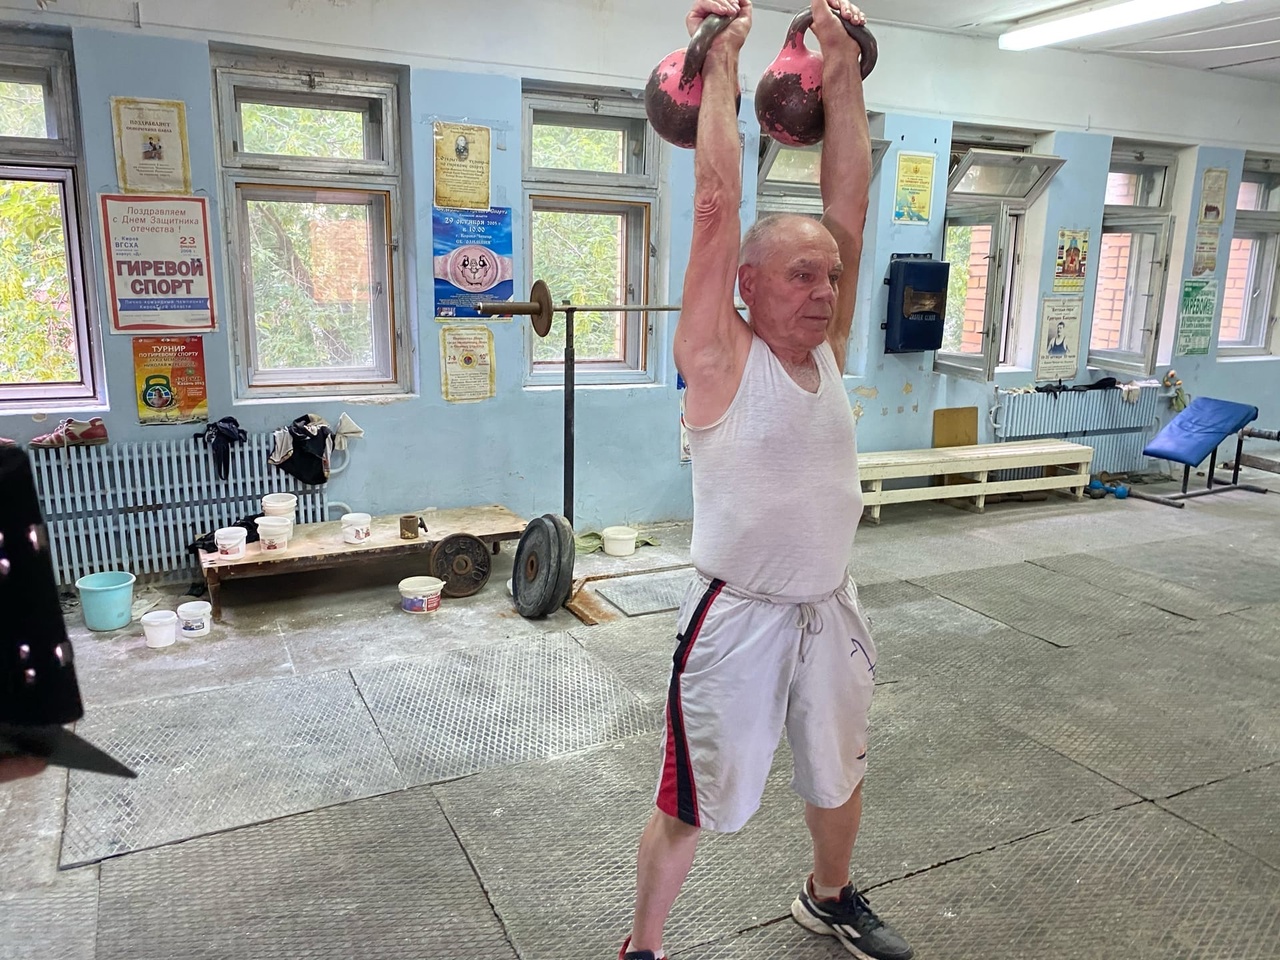 "Ощущение, что тебе лет 20": 81-летний чепчанин поднимает гирю 220 раз